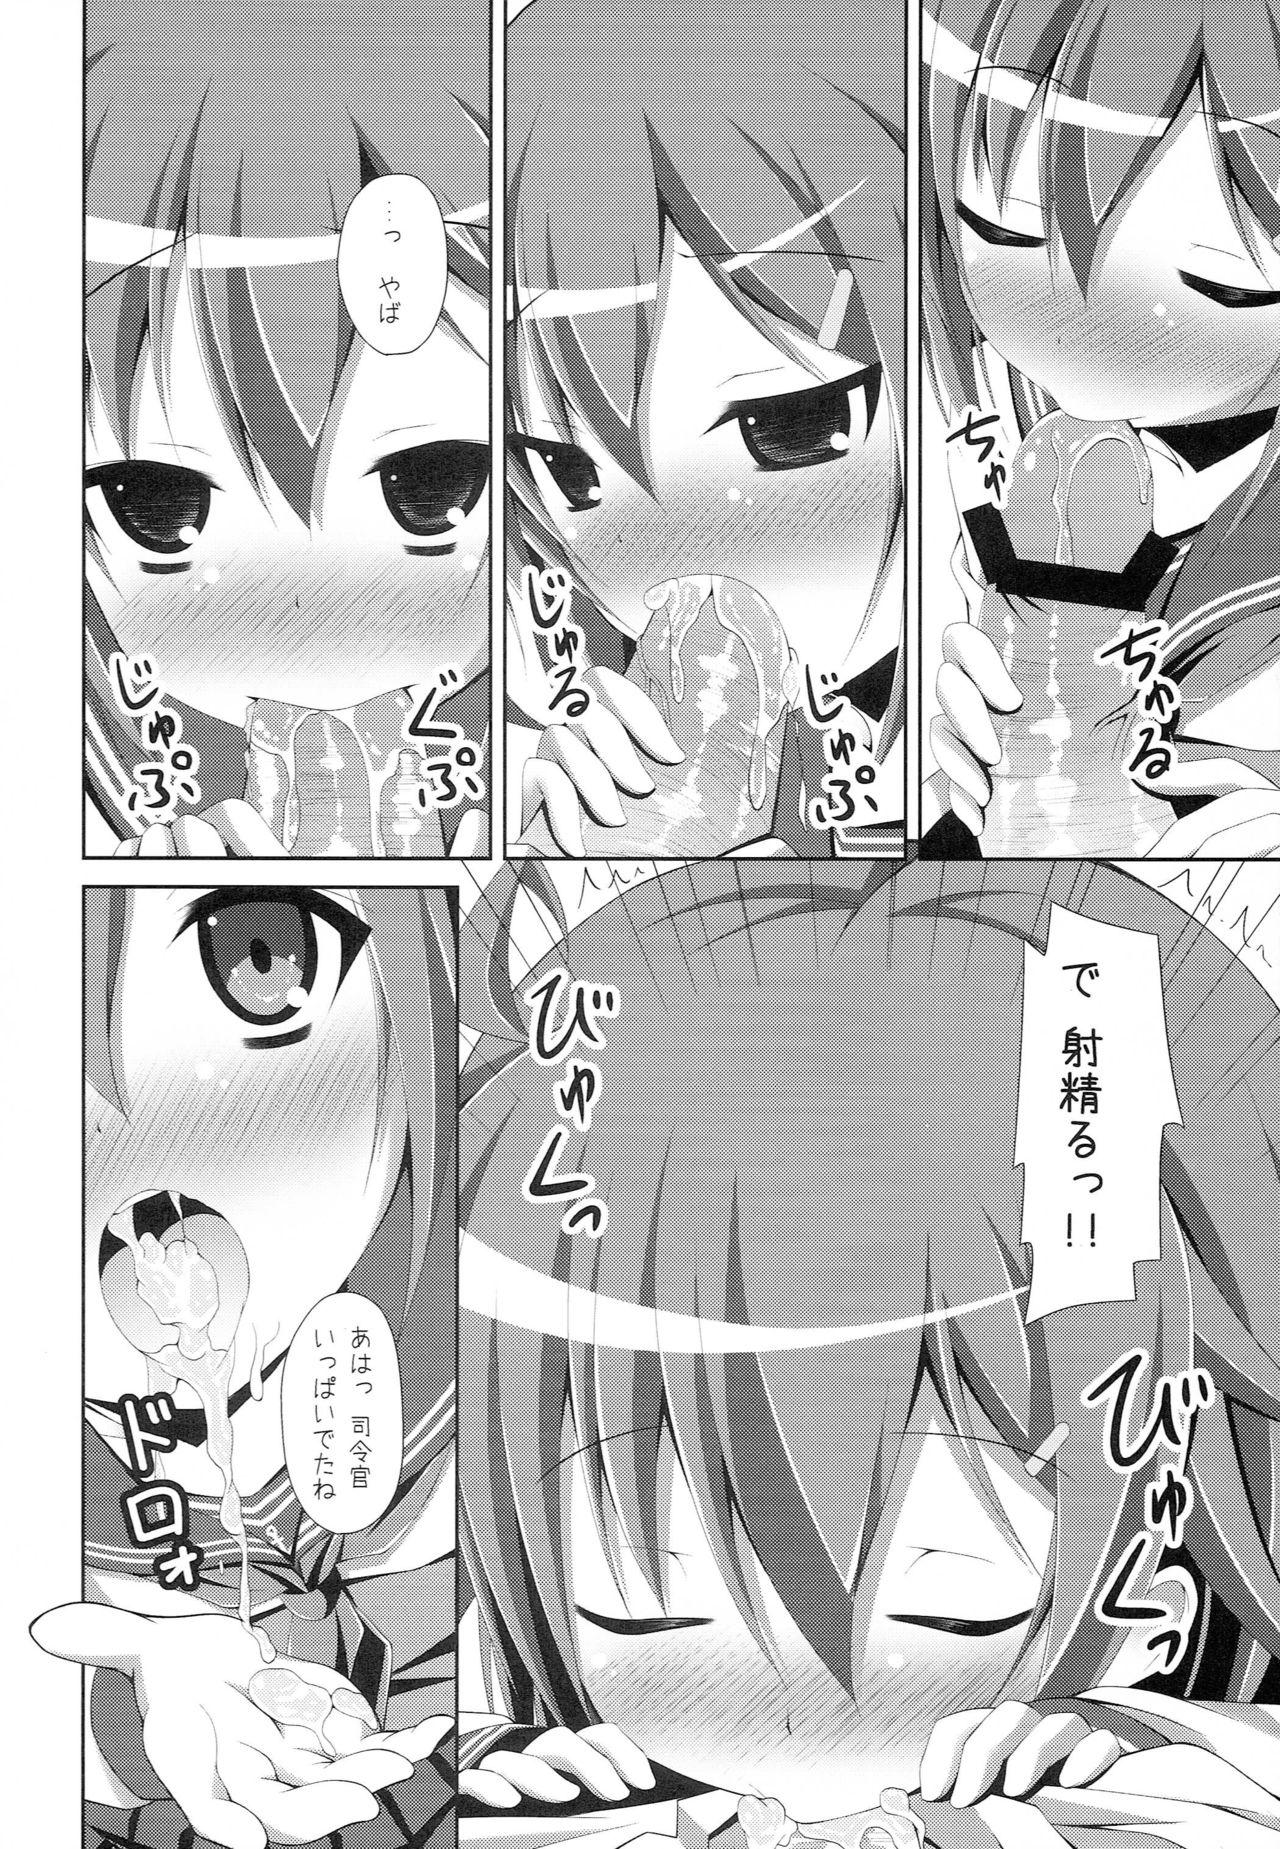 European Porn "Shire-kan Ecchi Shiyo?" "Shireikan to Nara Watashi mo..." - Kantai collection Teentube - Page 7